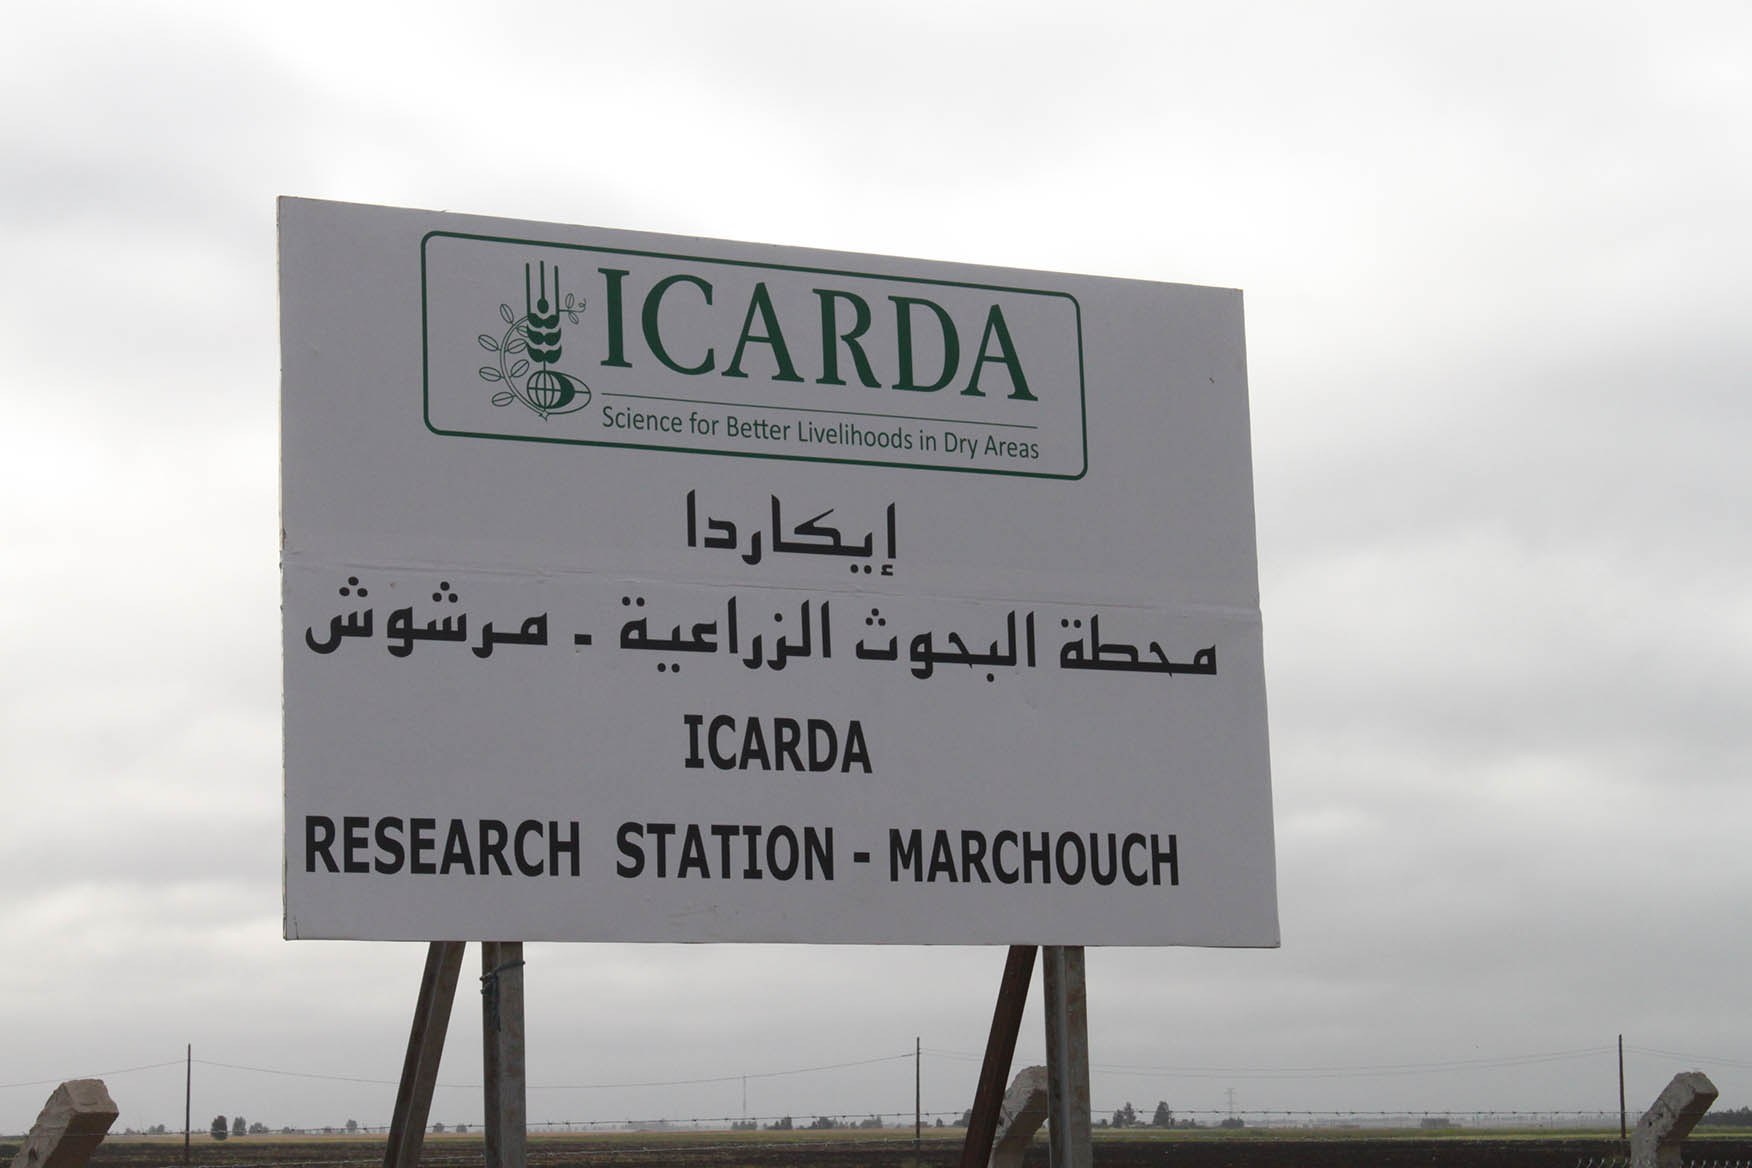 جولة بمرشوش للتعرف على أهم التجارب و الأصناف المستنبطة من طرف ICARDA